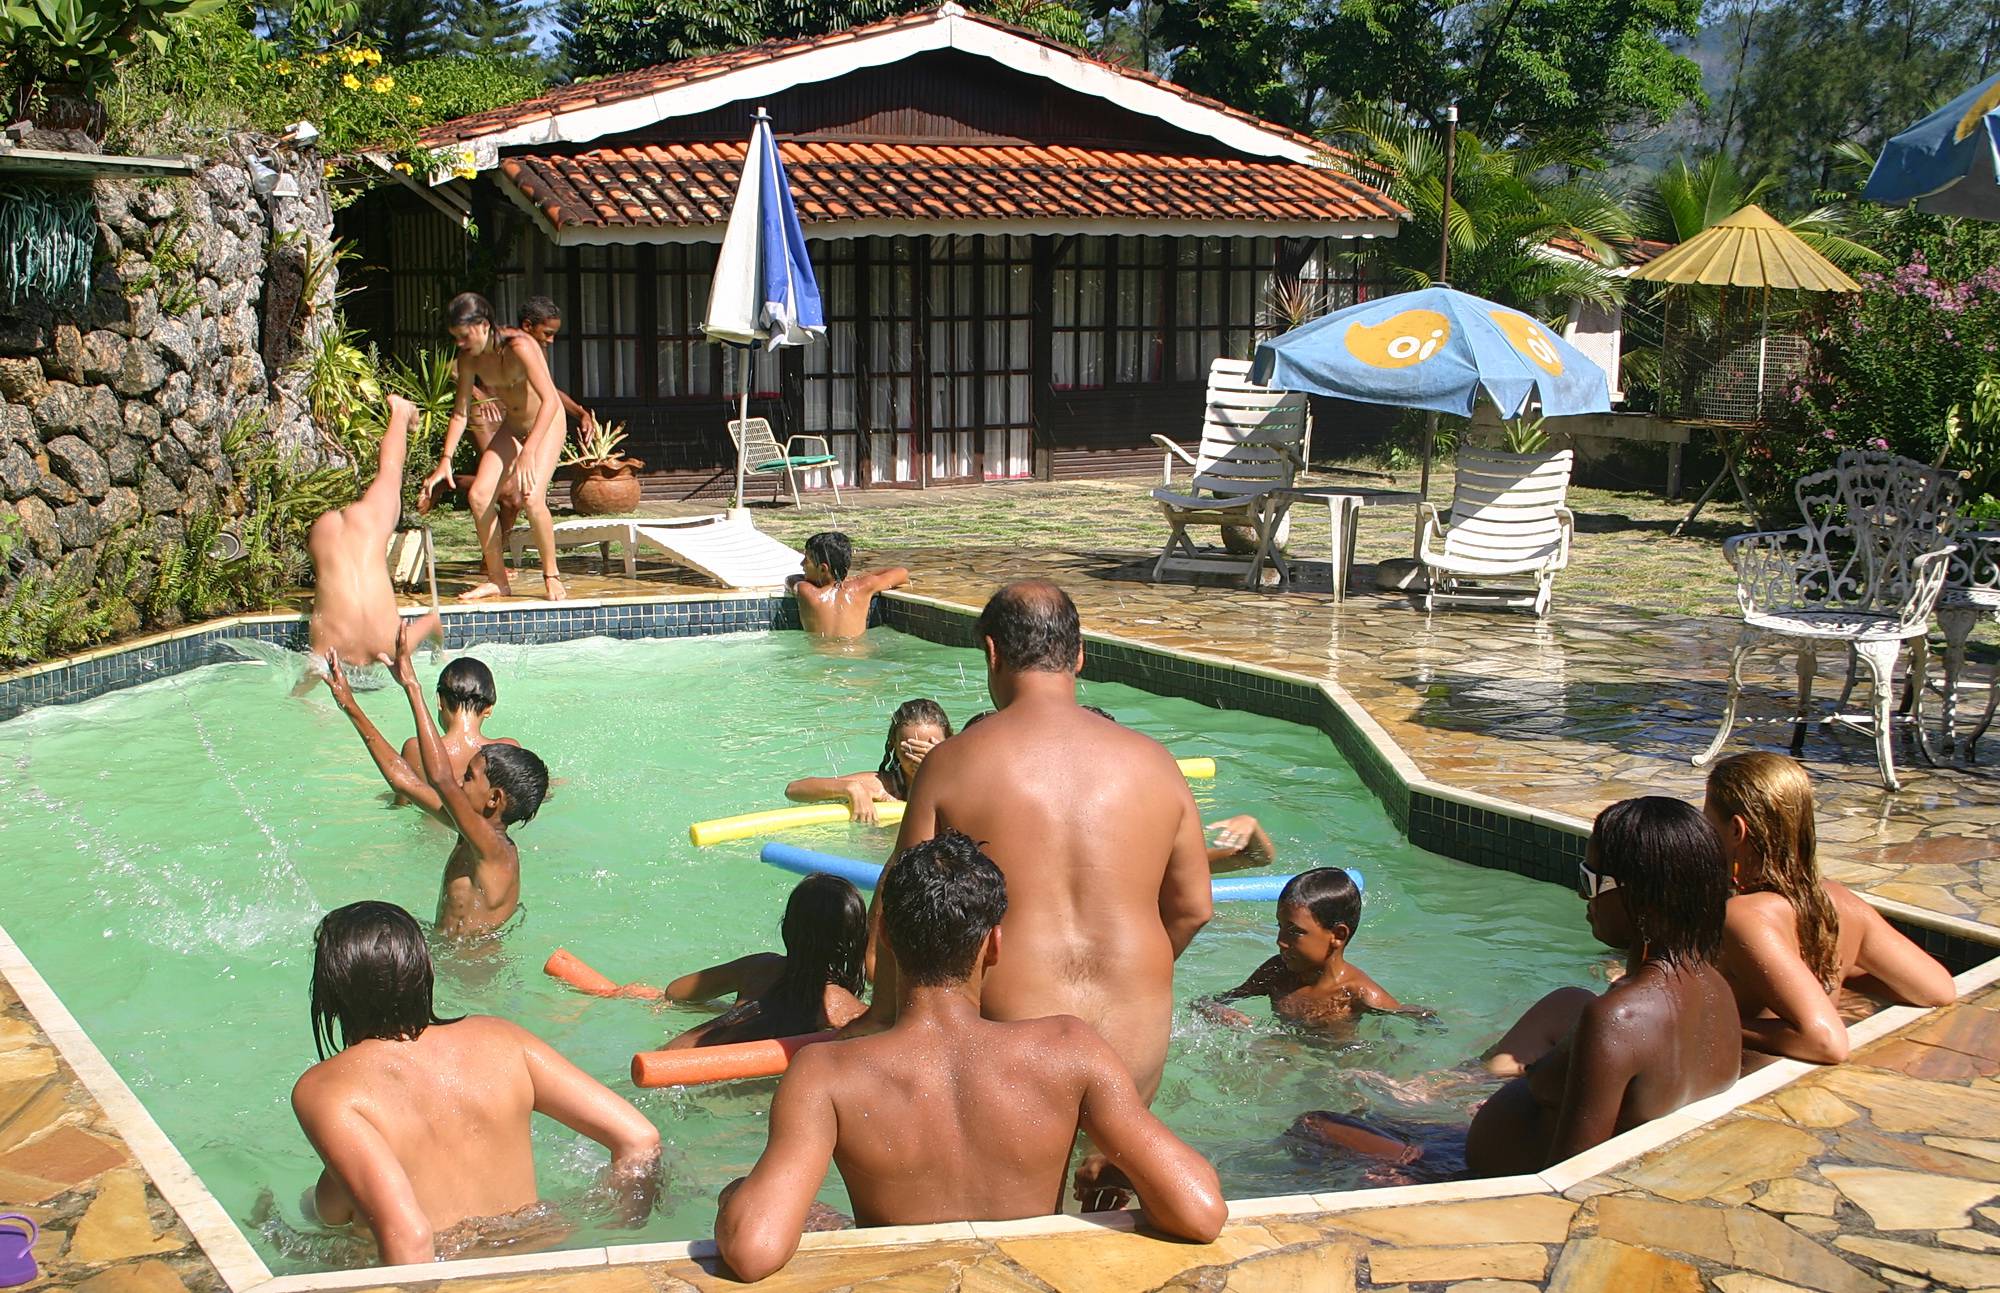 Pure Nudism Images Brazilian Outdoor Resort - 1